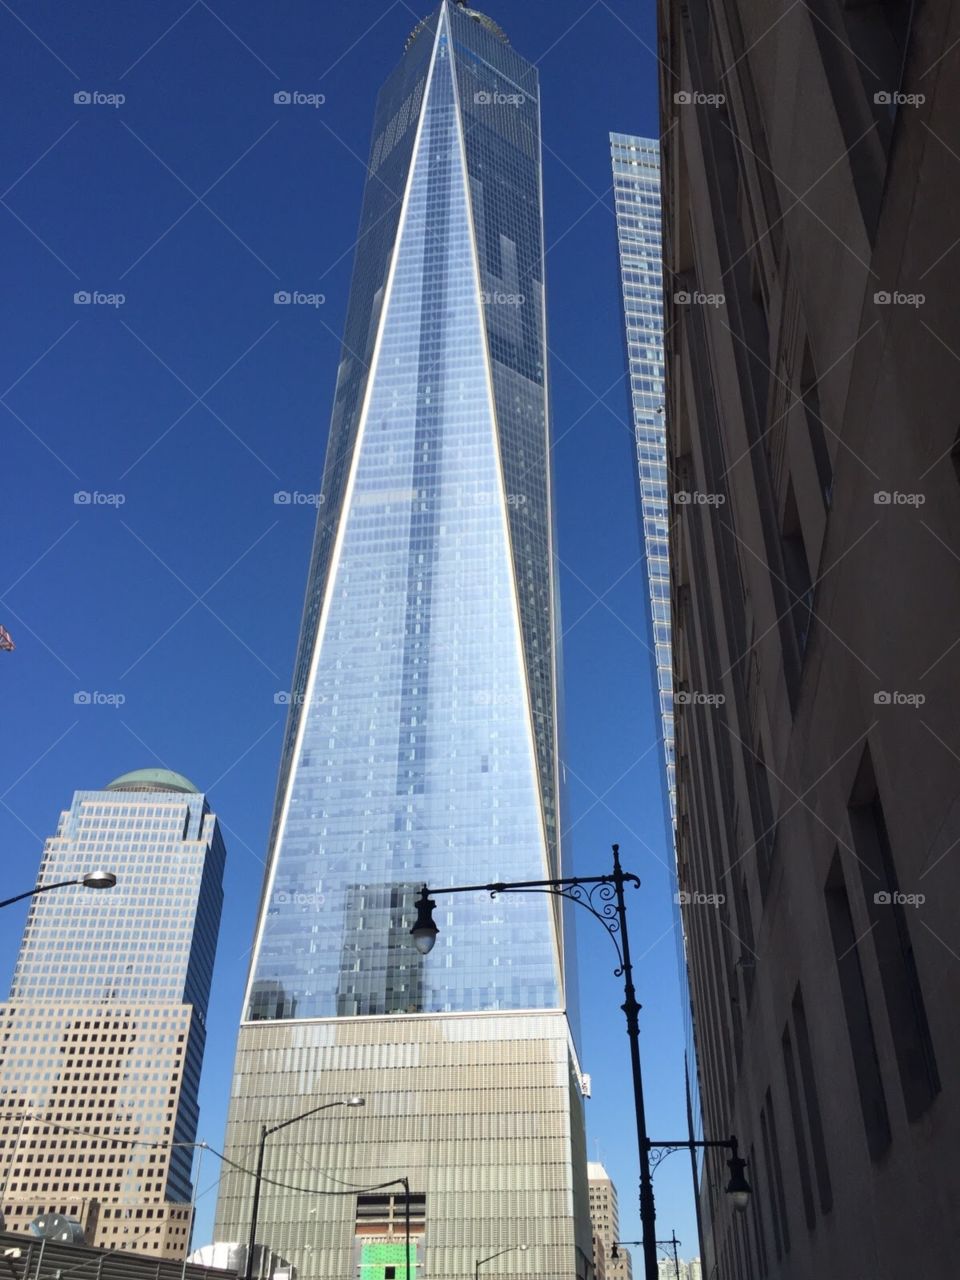 Manhattan 9/11 tower